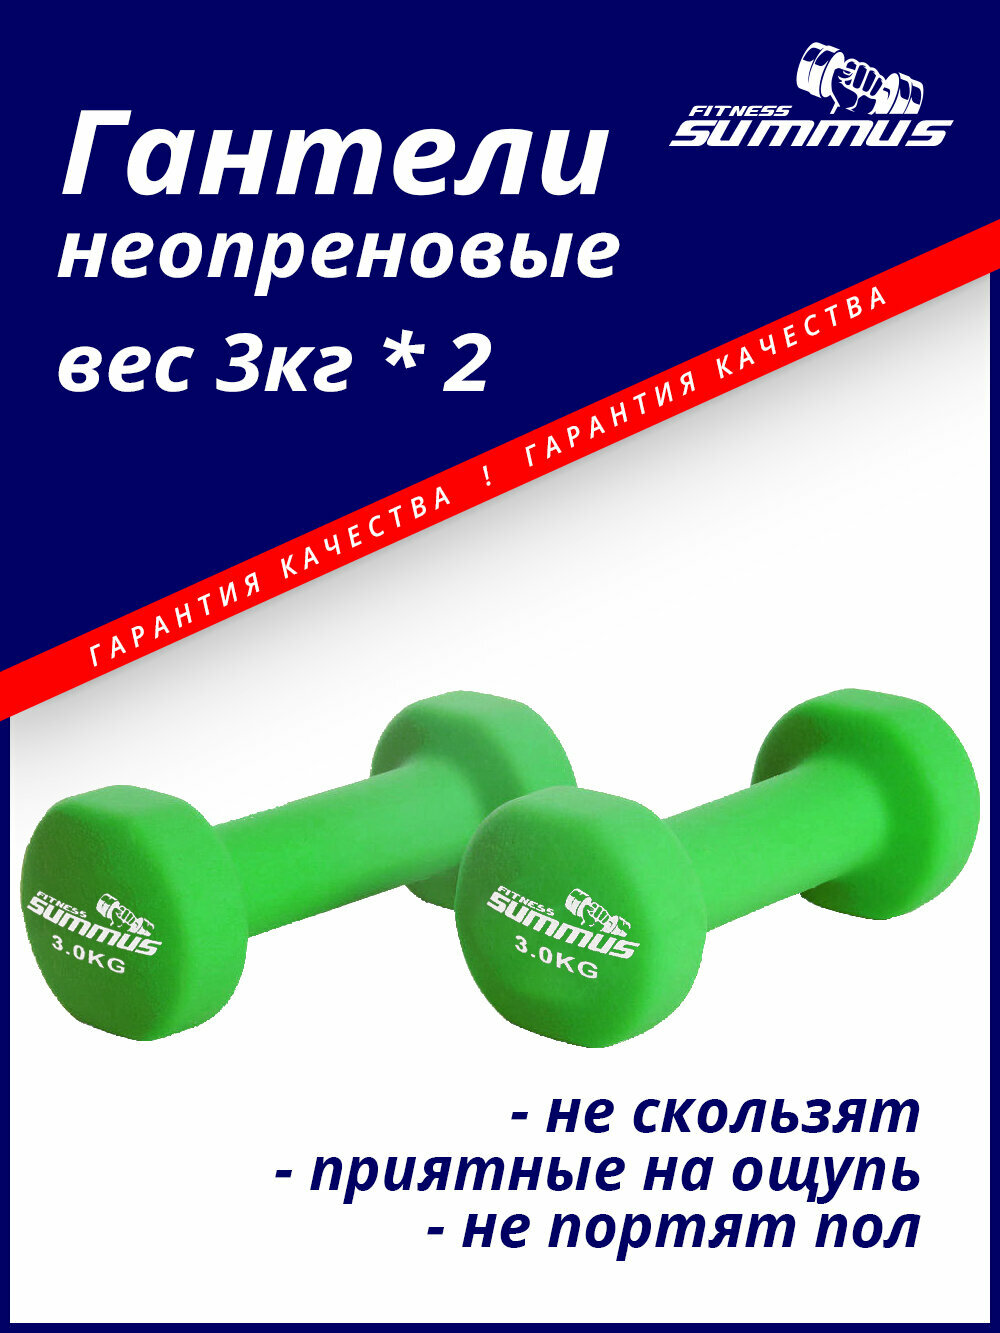 Гантели для фитнеса неопреновые Summus 2 шт. по 3 кг женские, мужские для дома и зала, для детей, арт. 500-103-green